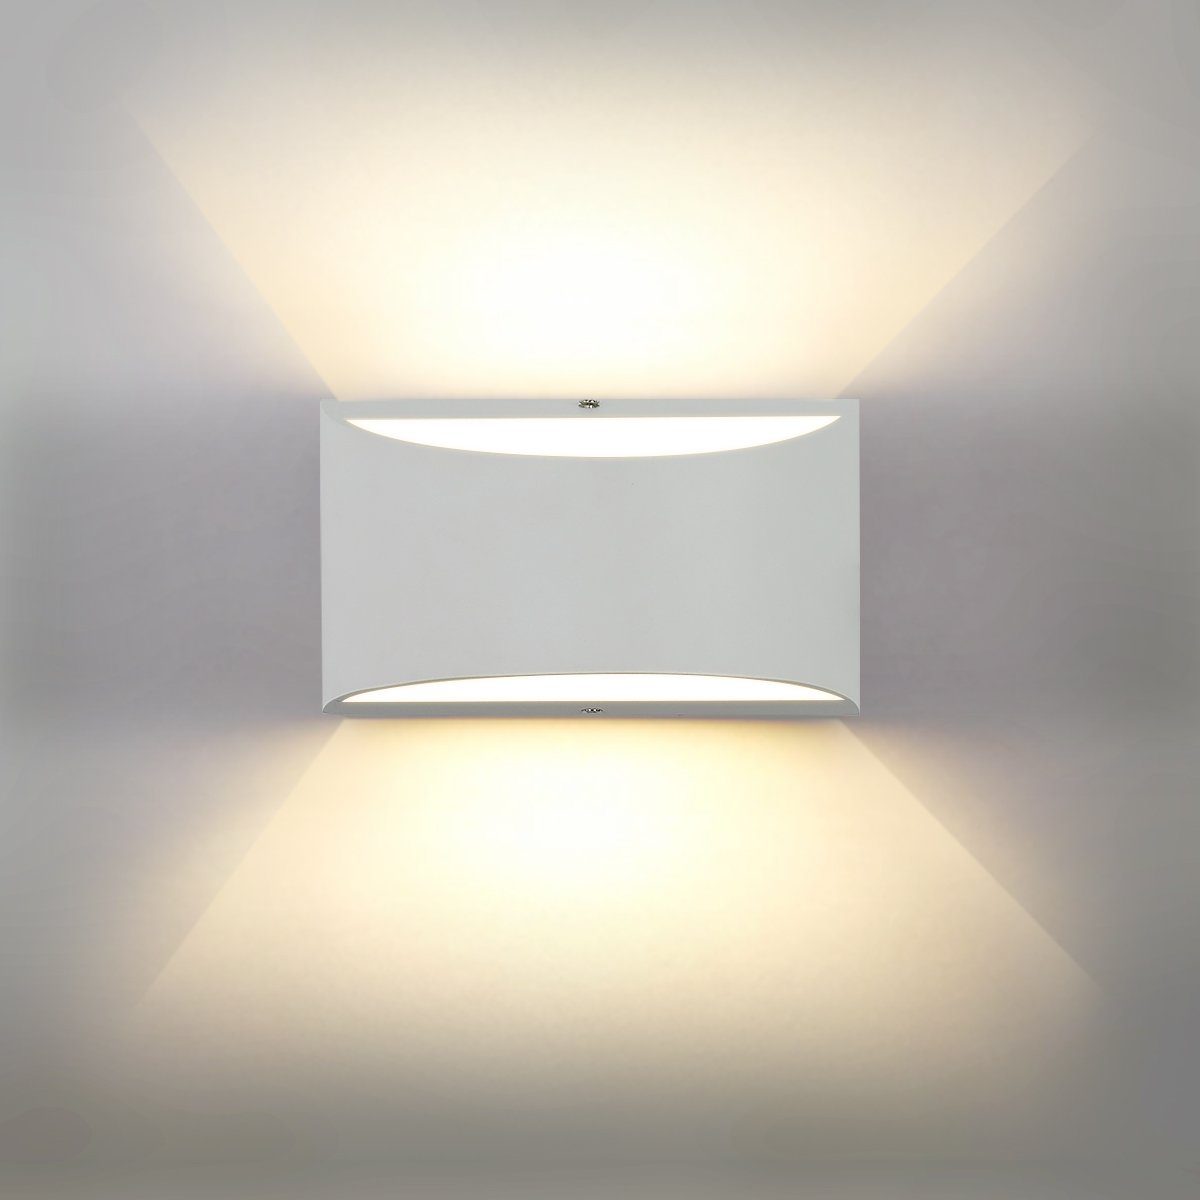 LETGOSPT Wandleuchte 5W LED Wandleuchte LED enthalten), Wandleuchte 1x Birne LED (G9 5W Badezimmer, Strahler G9 Schlafzimmer warmweißes, wechselbar, Wandlicht, Lichtstrahl für Wandlampe, LED Square Innen